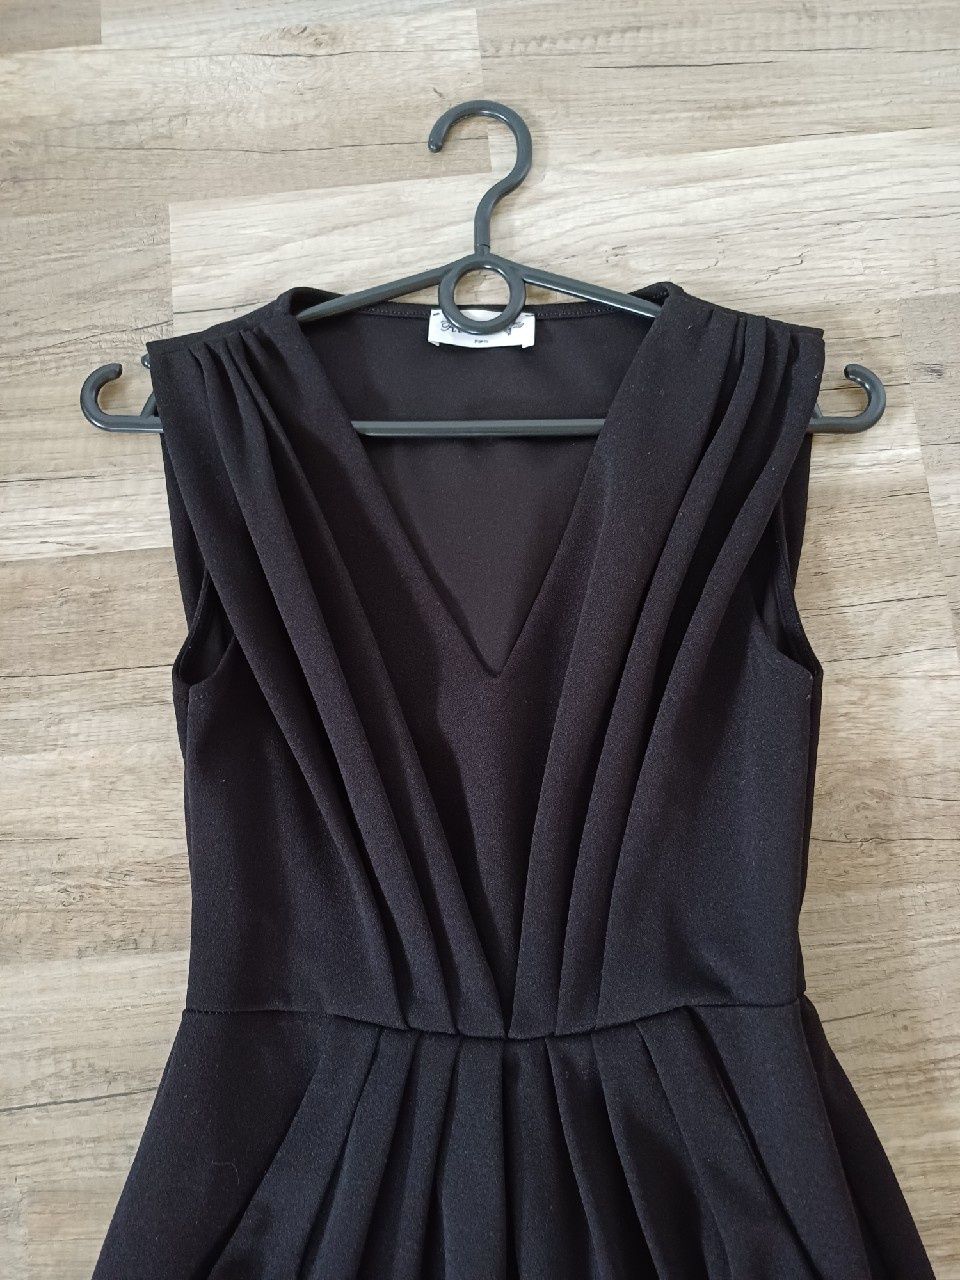 Czarna sukienka bez rękawów XS ReVd'elle